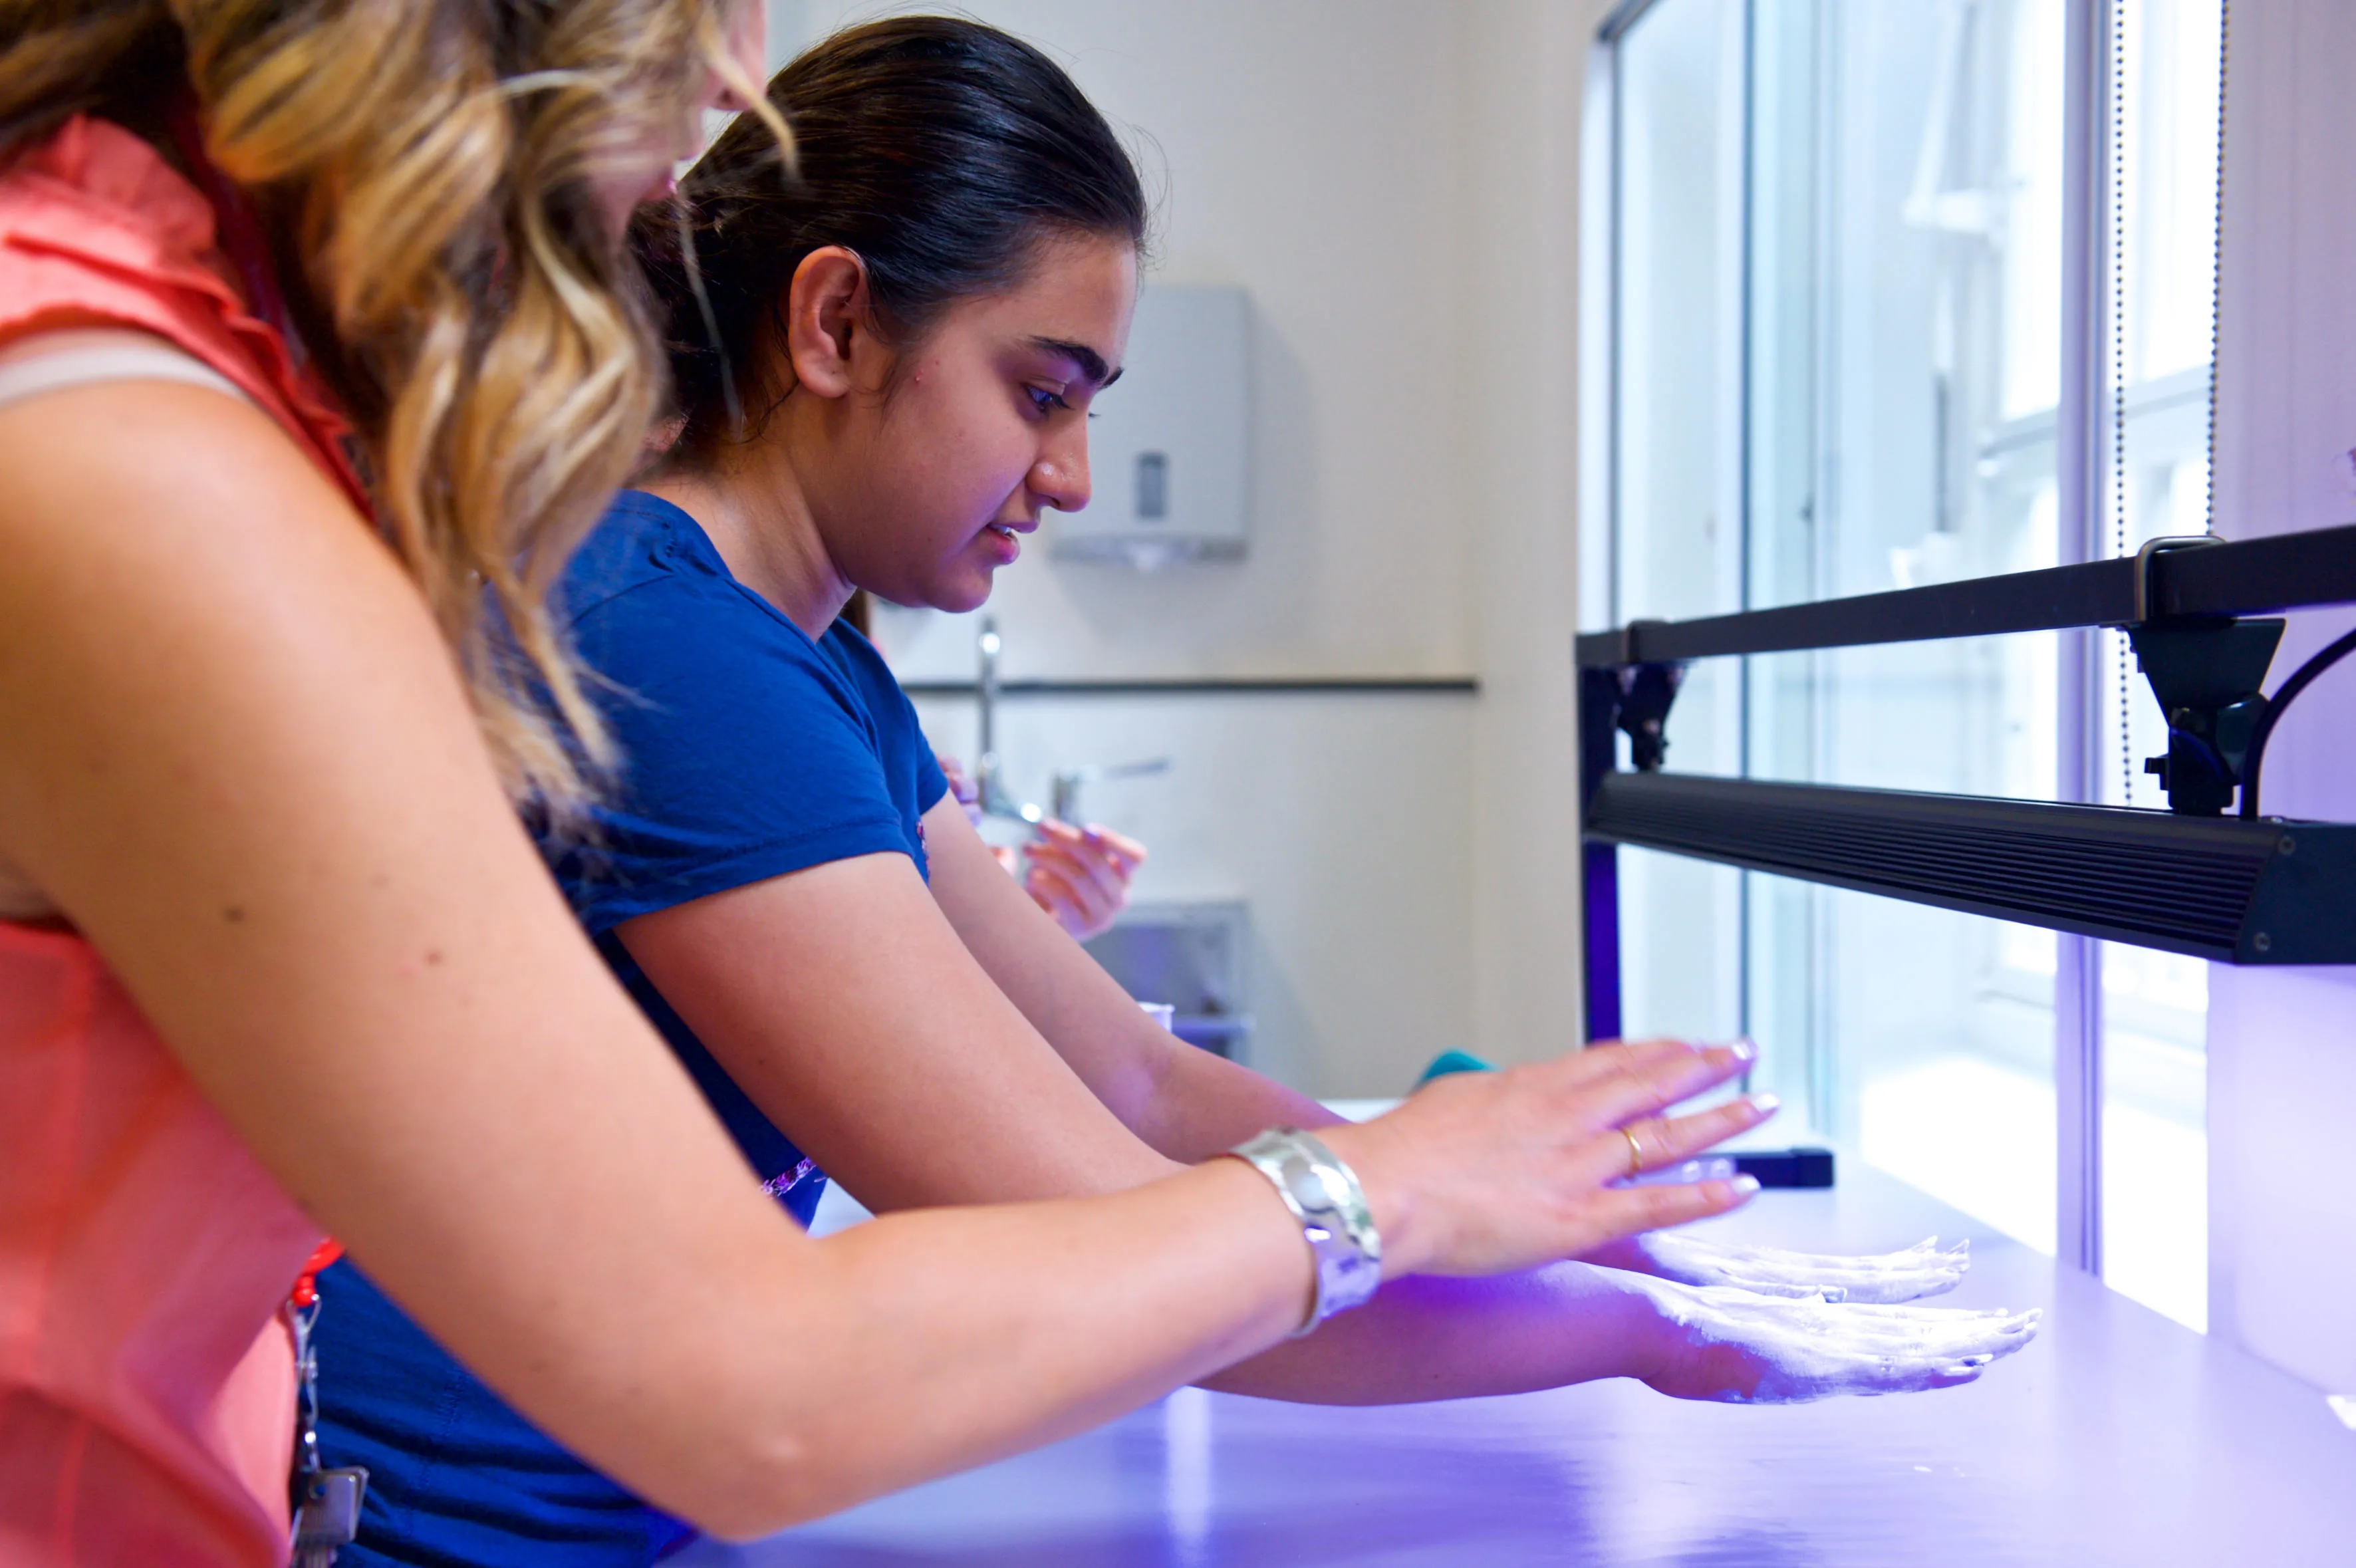 medical student examining hands under an ultra violet light